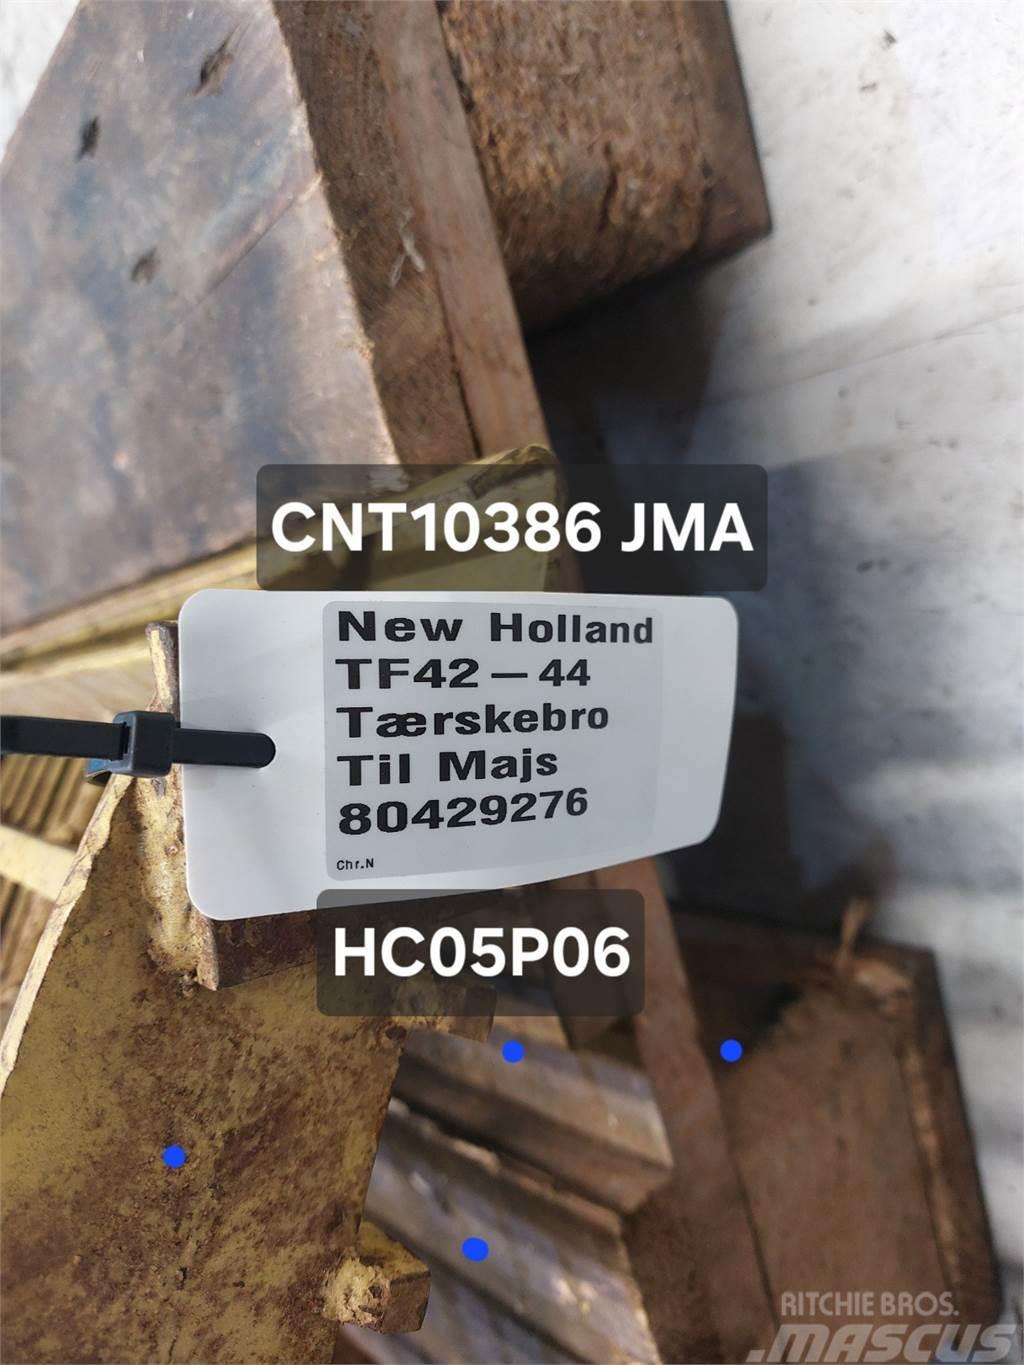 New Holland TF44 Příslušenství a náhradní díly ke kombajnům